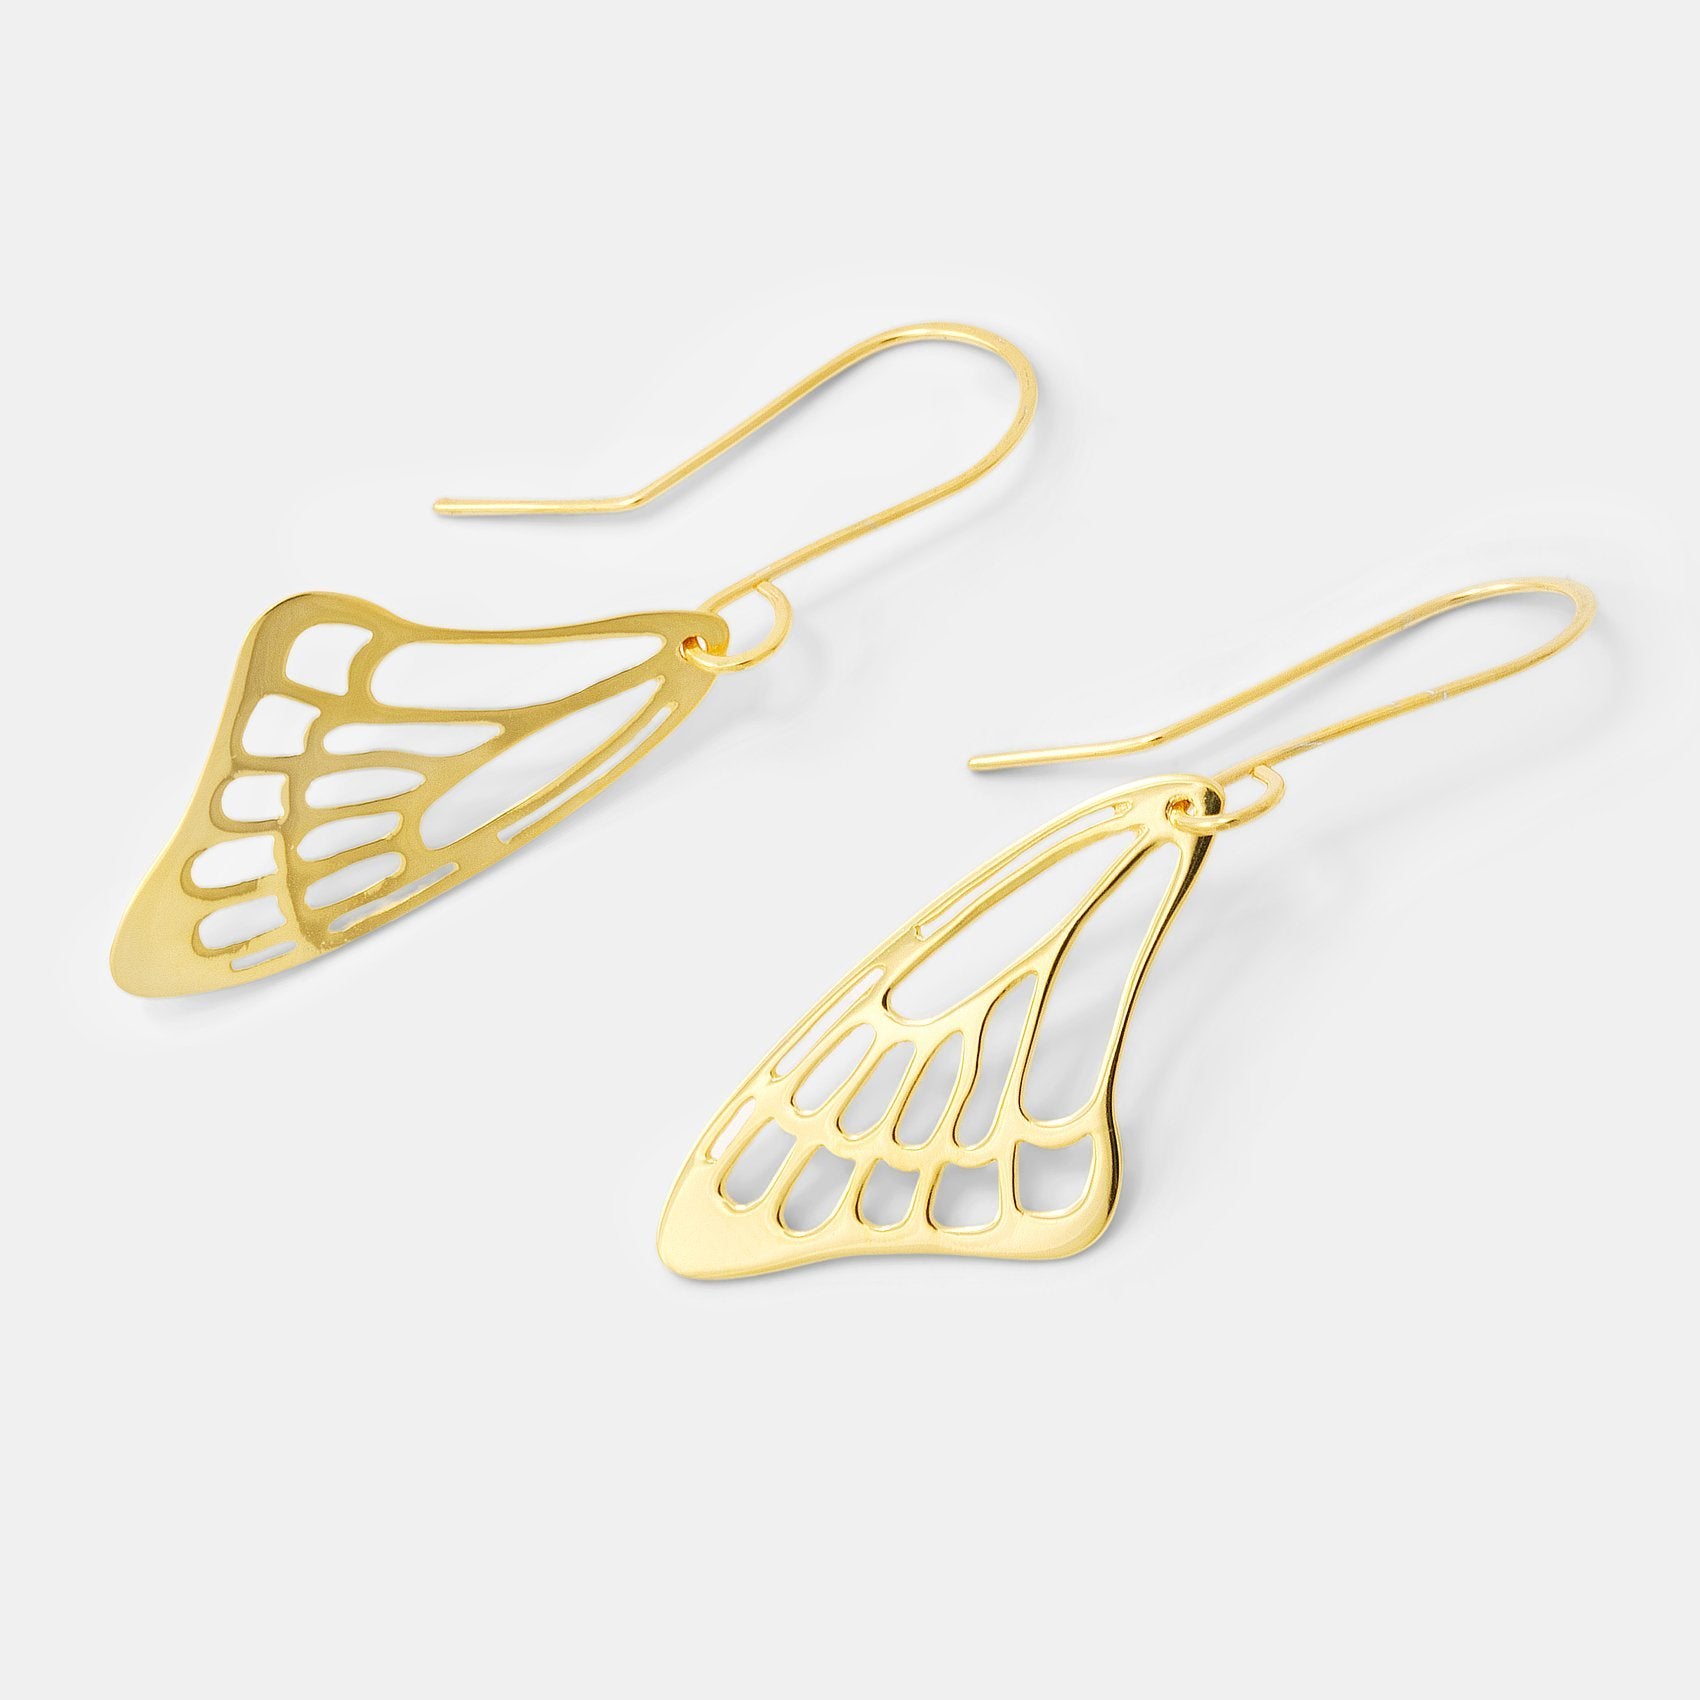 Butterfly wing gold earrings - Simone Walsh Jewellery Australia